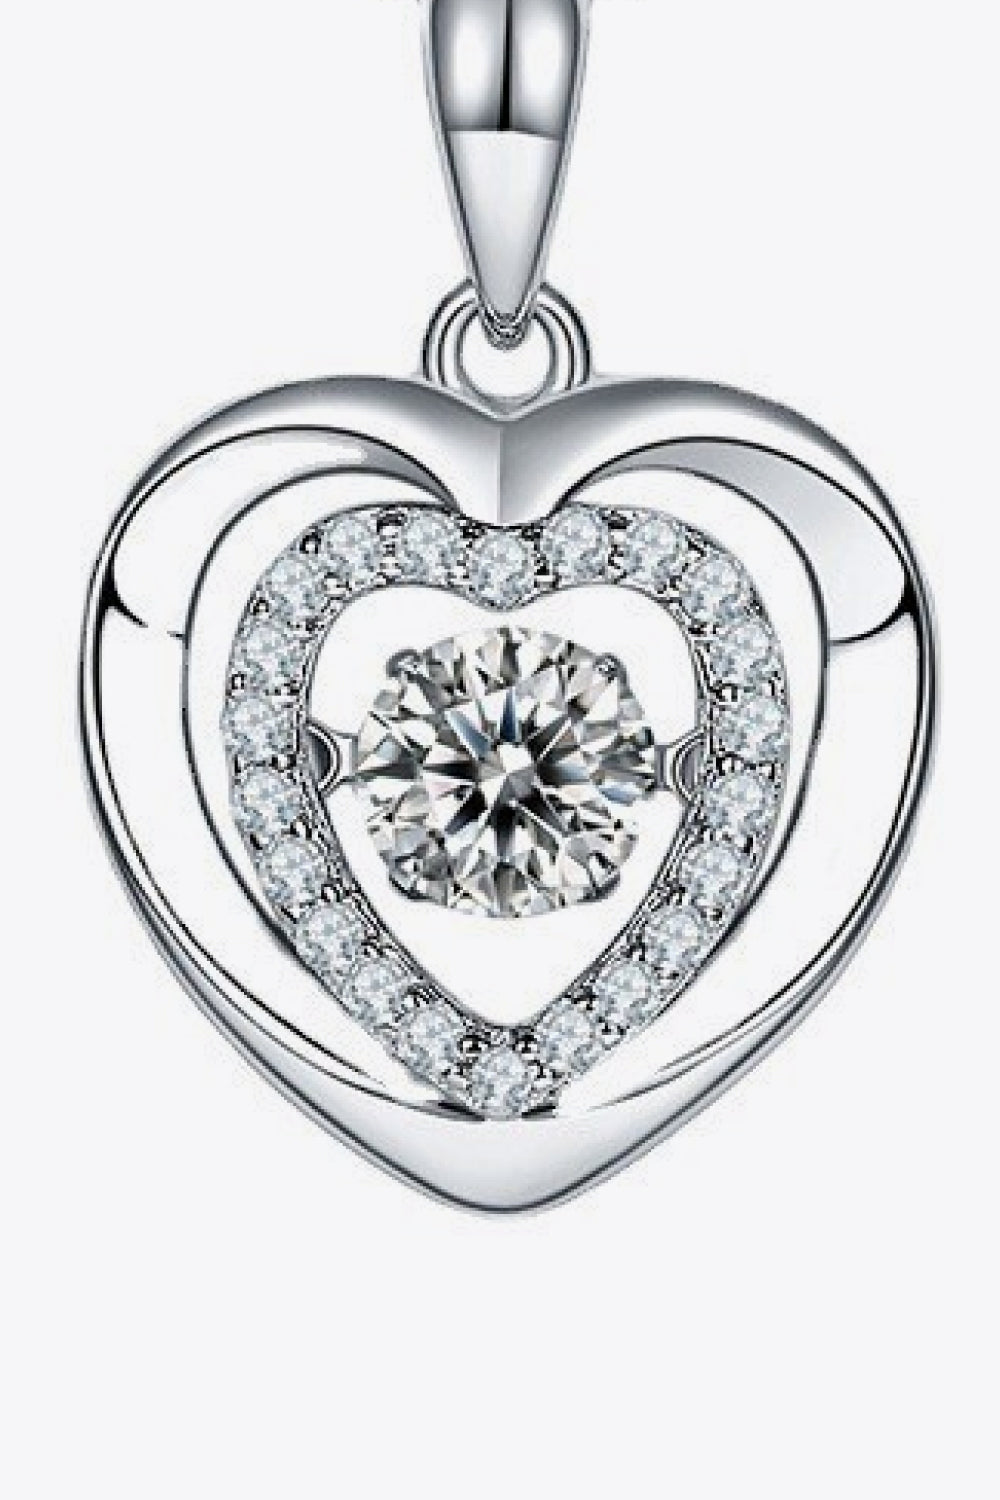 Moissanite Heart Pendant Necklace - DromedarShop.com Online Boutique